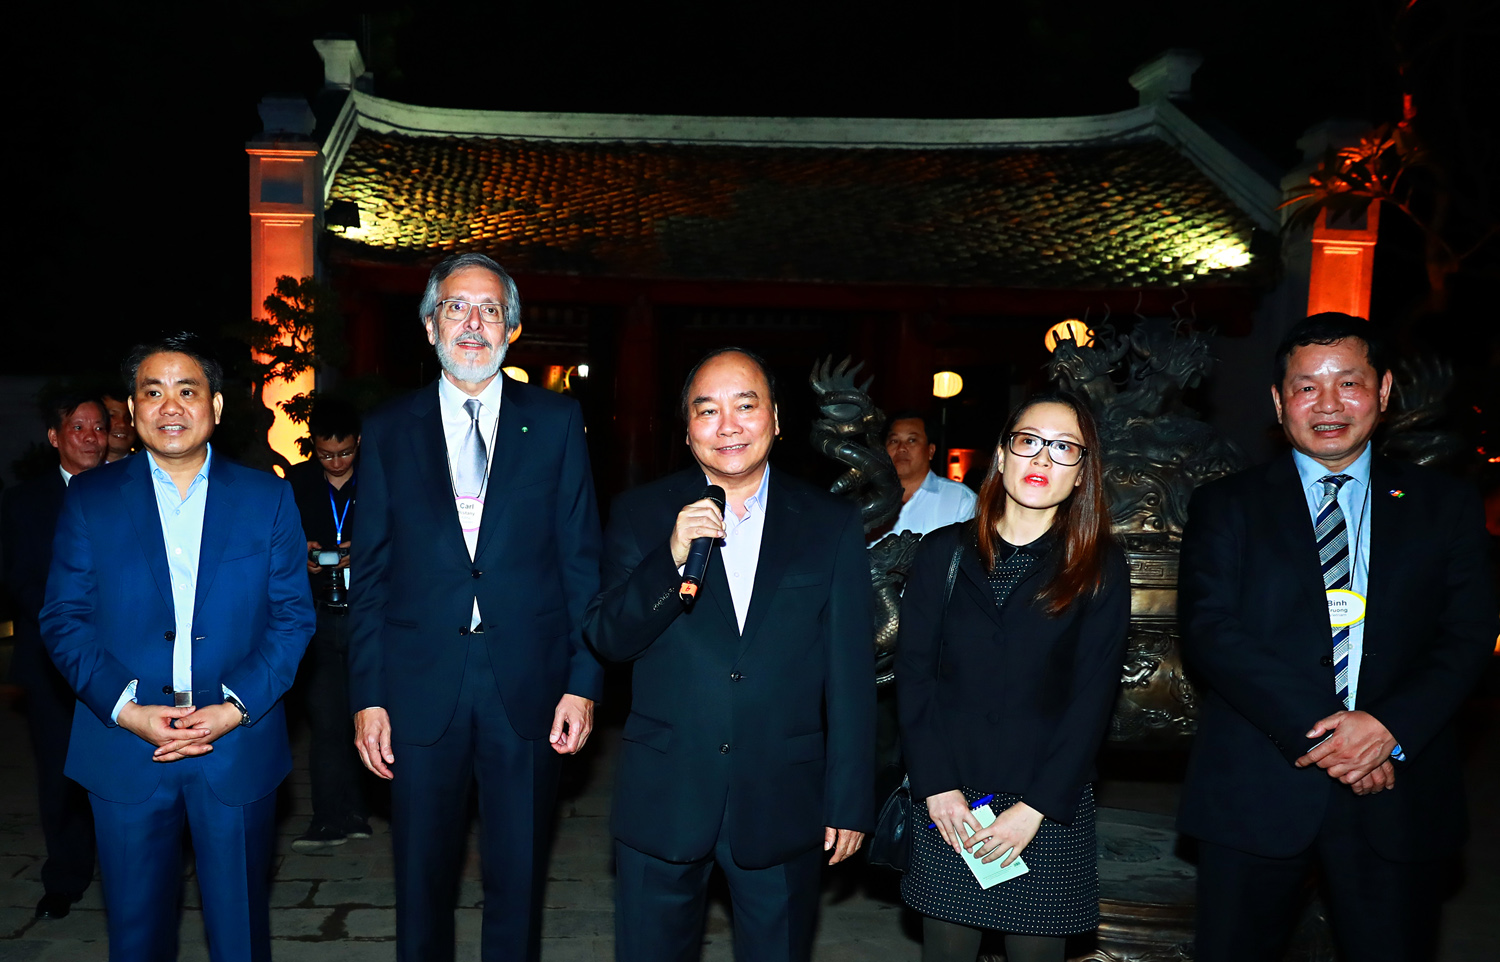  Thủ tướng trân trọng mời các doanh nhân tham dự sự kiện APEC vào cuối năm nay tại Việt Nam. Ảnh: VGP